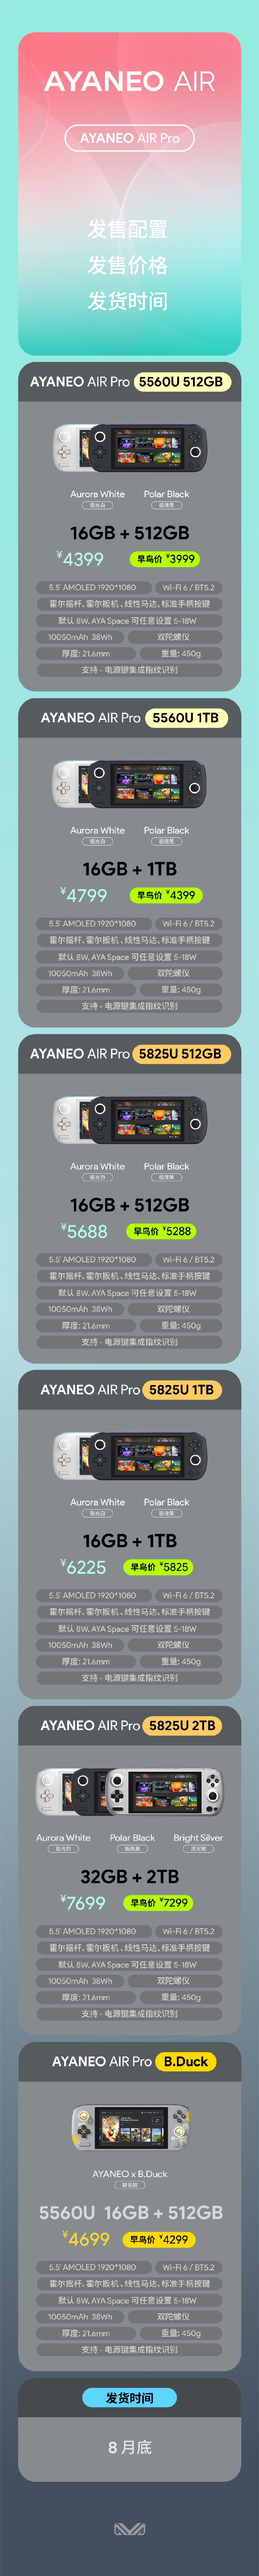 国产掌机AYANEO AIR Pro发布 顶配版售价7699元